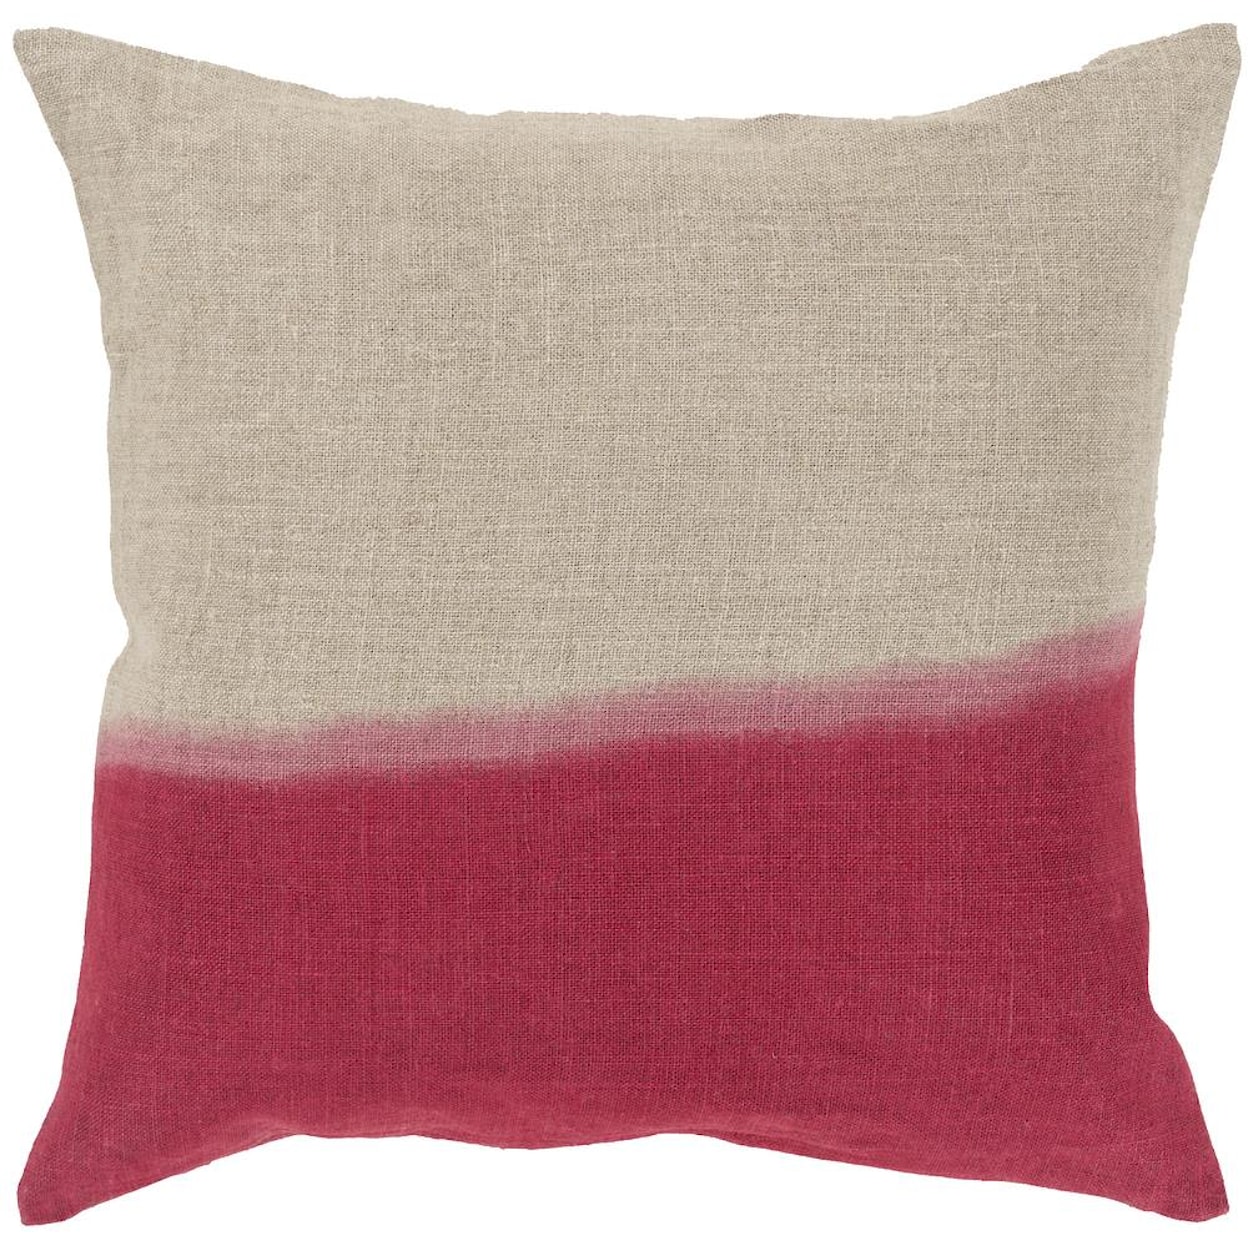 Surya Pillows 20" x 20" Dip Dyed Pillow